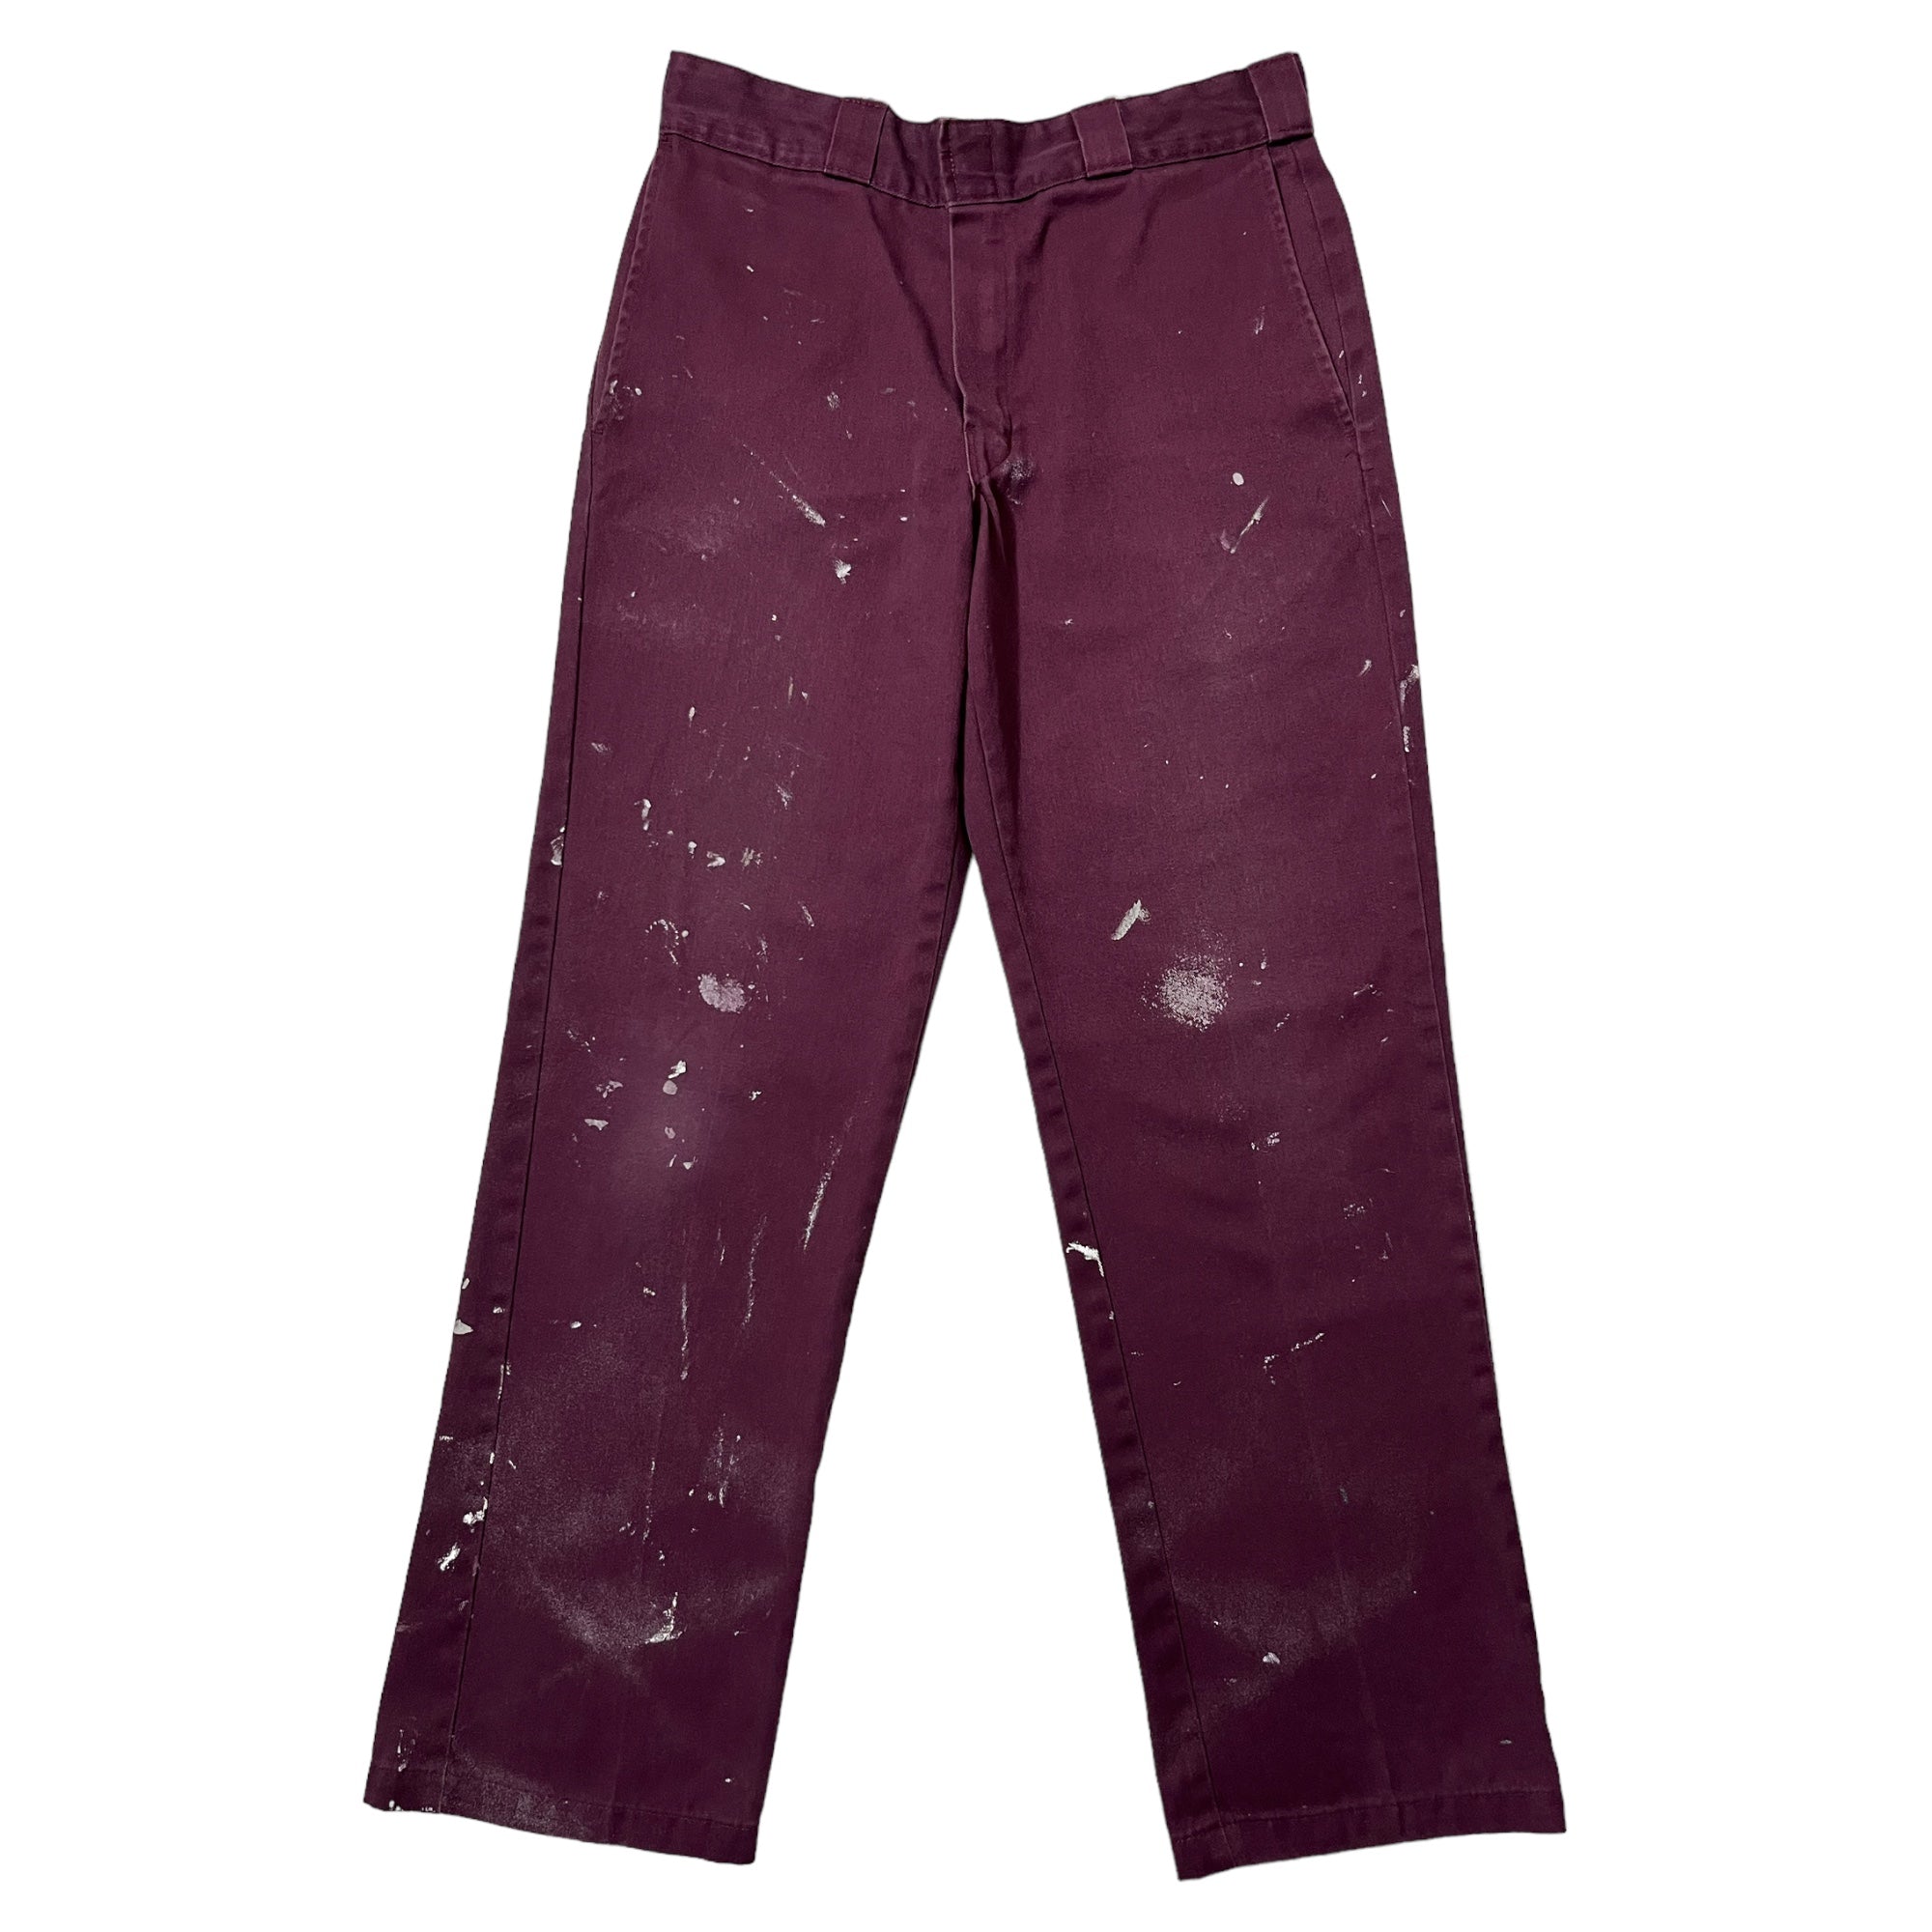 Vintage DICKIES Charcoal Grey 874 Original Fit Work Pants (32x30